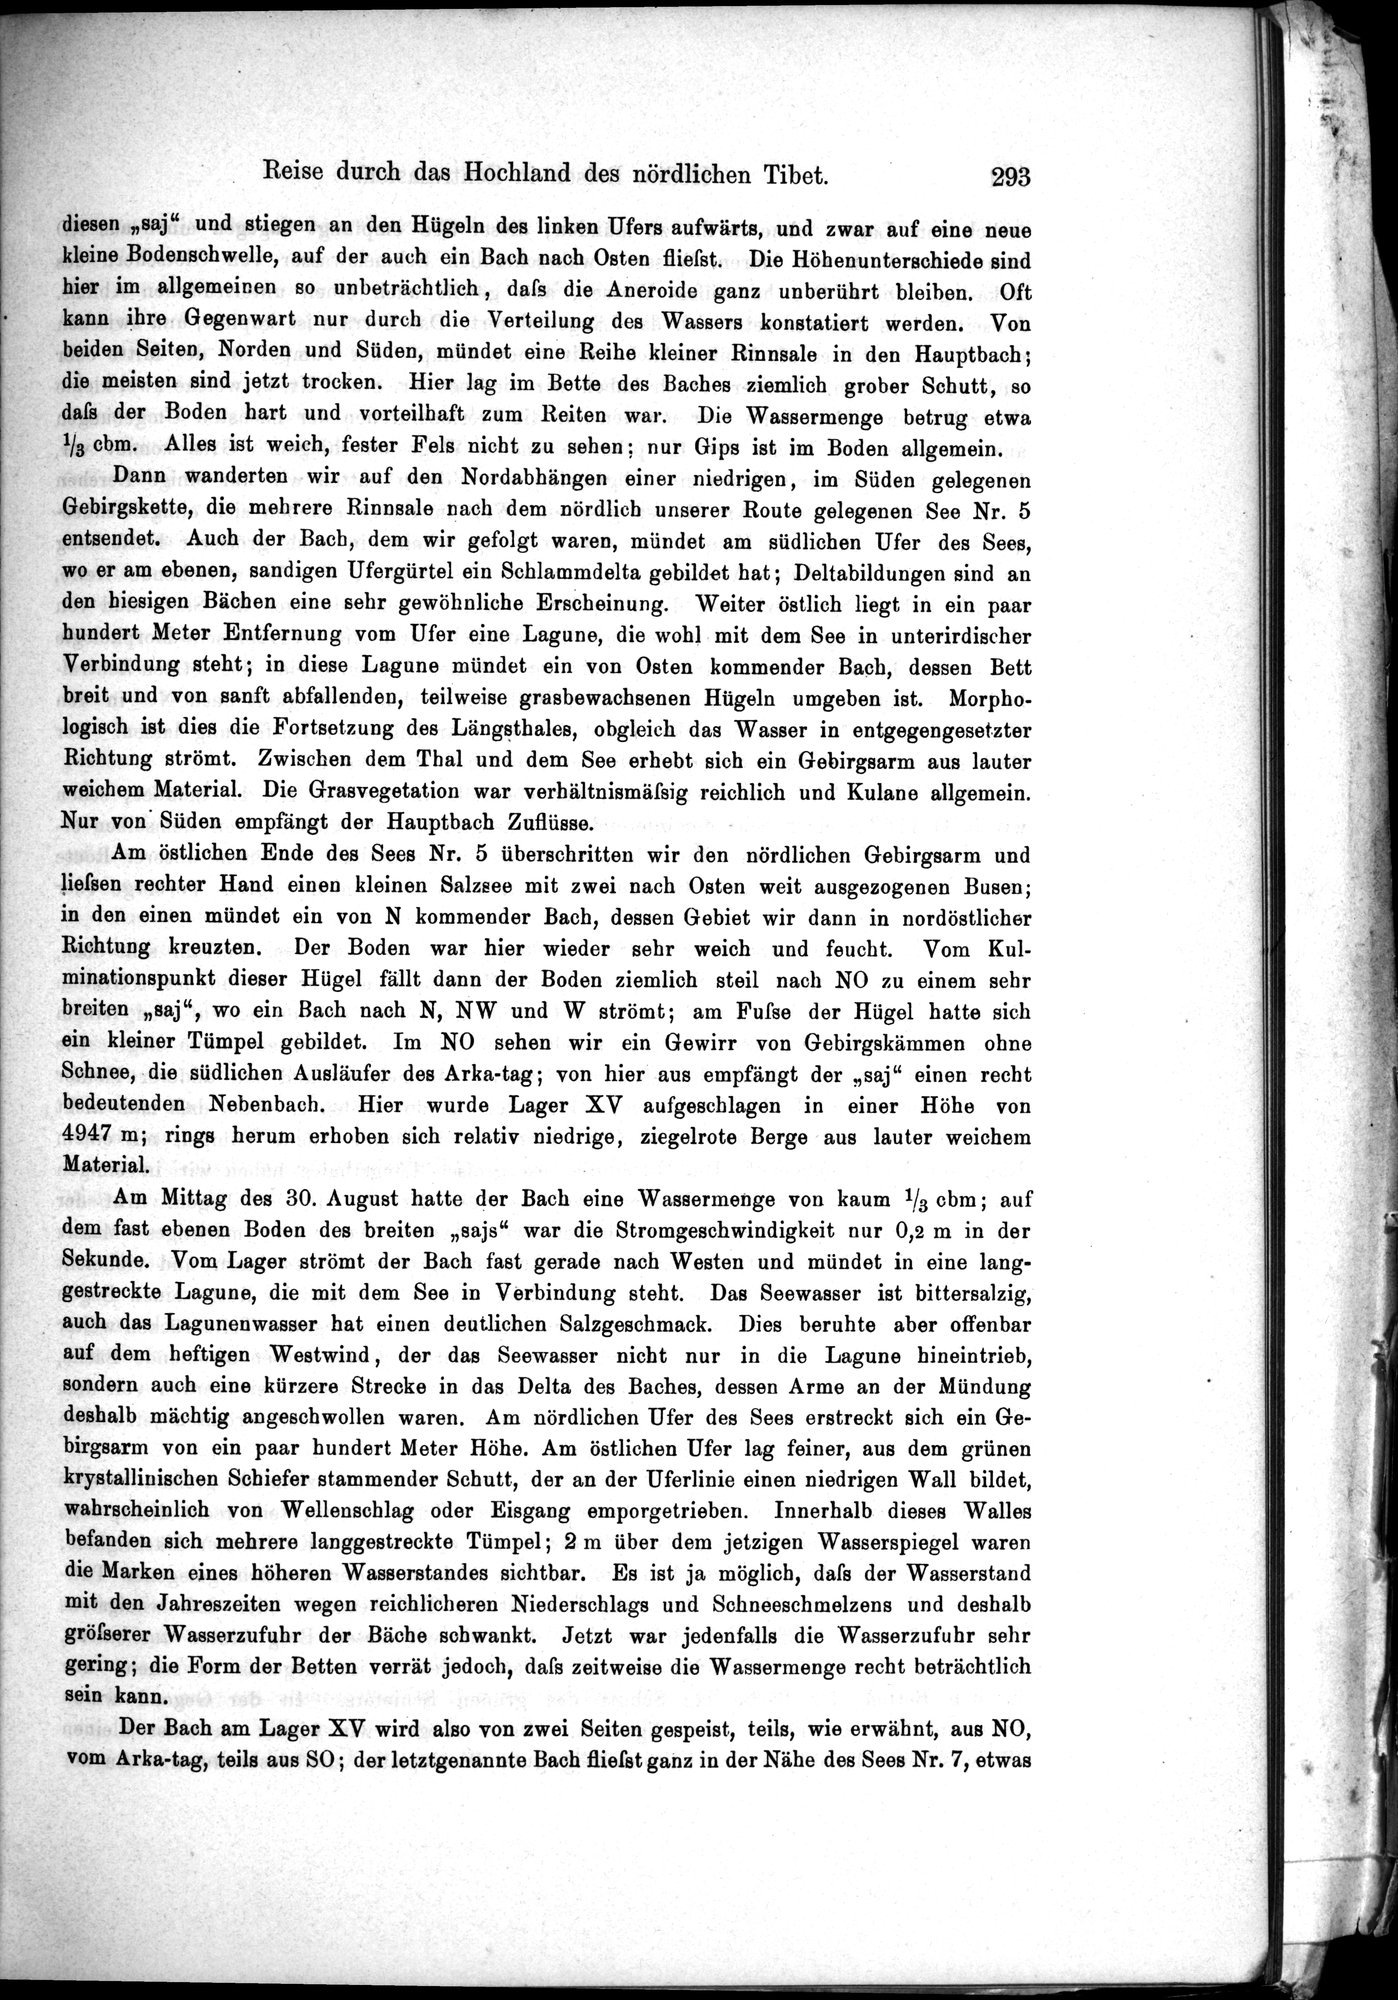 Die Geographische-Wissenschaftlichen Ergebnisse meiner Reisen in Zentralasien, 1894-1897 : vol.1 / Page 305 (Grayscale High Resolution Image)